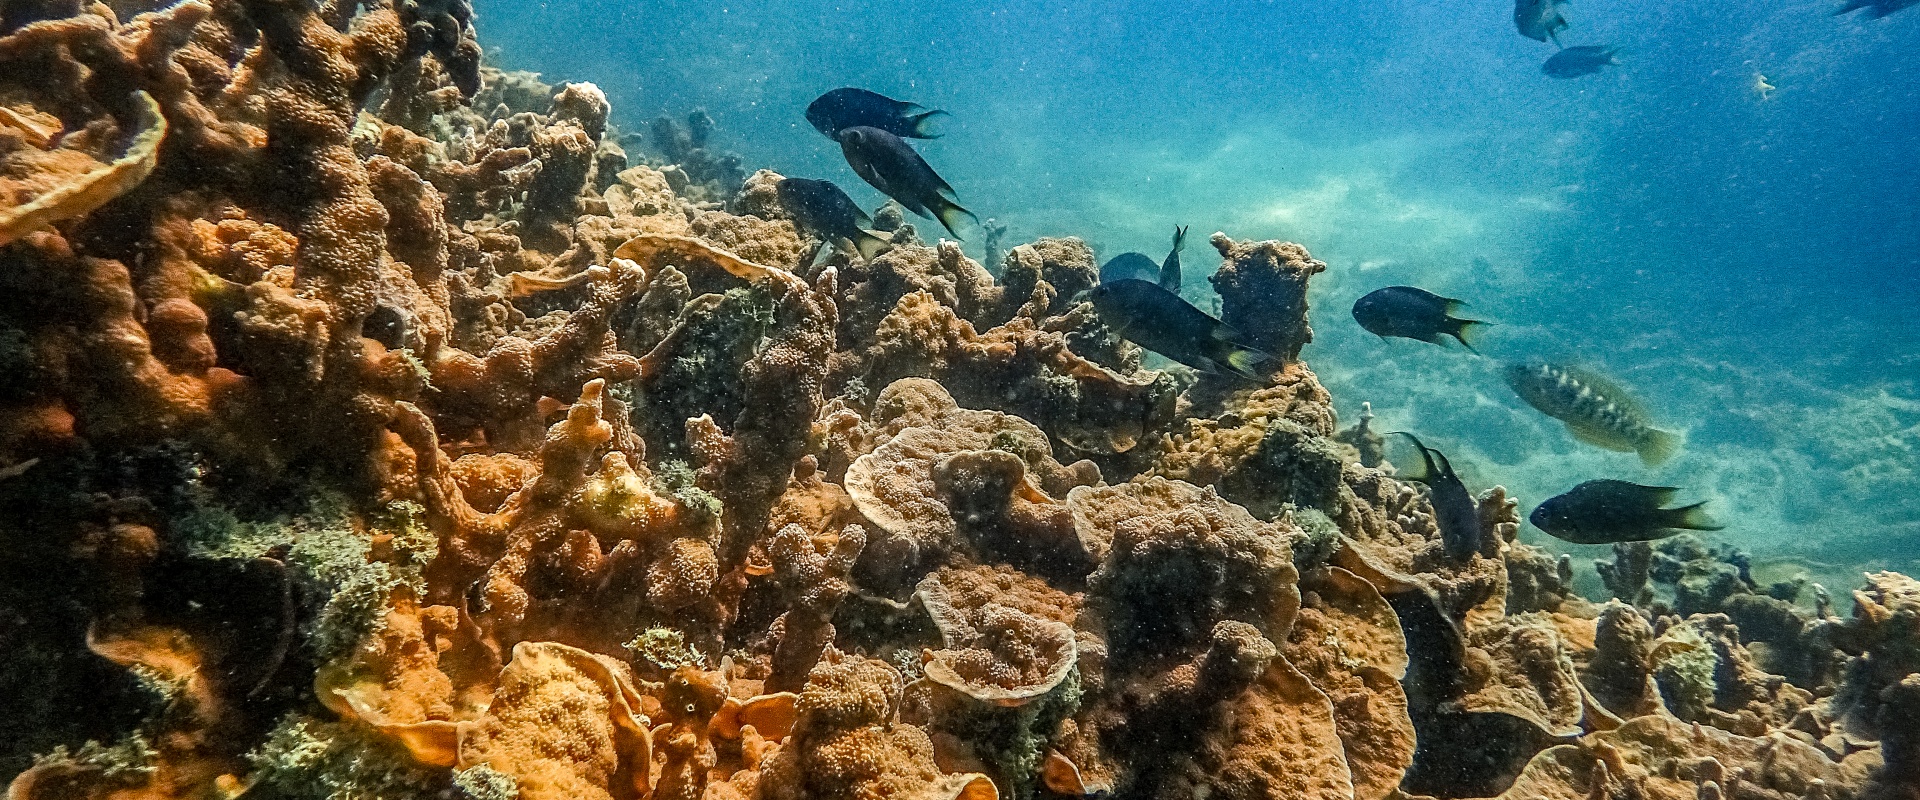 Coral reef in Teluk Datai